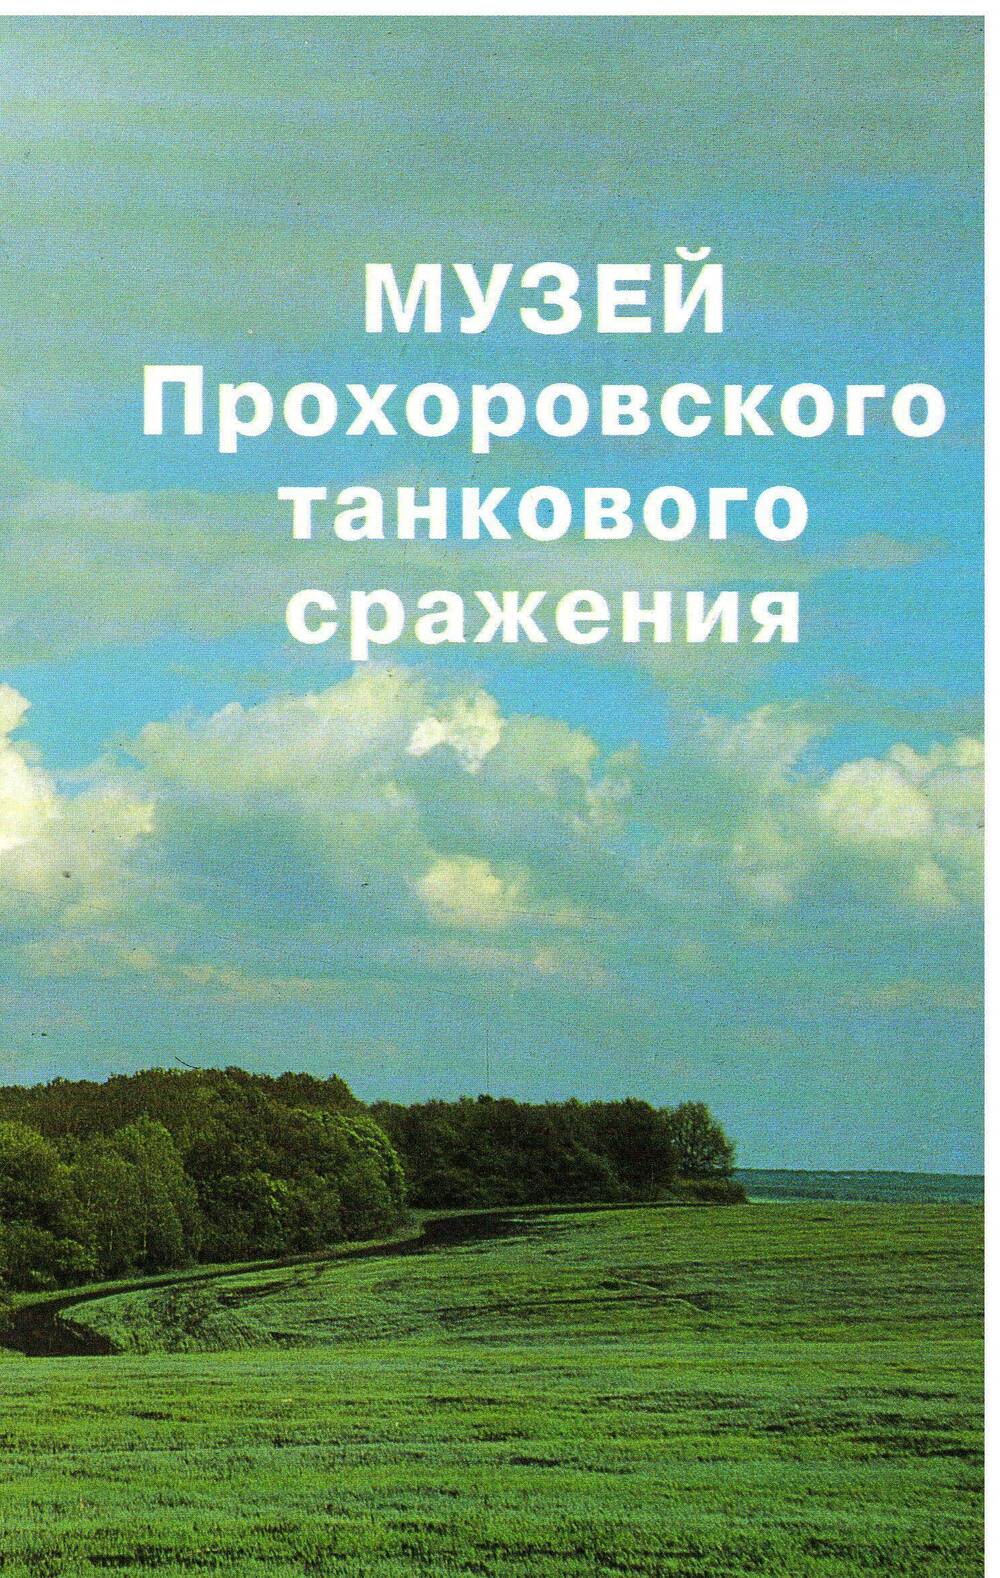 Брошюра Музей Прохоровского танкового сраженияг.Белгород 1996г.